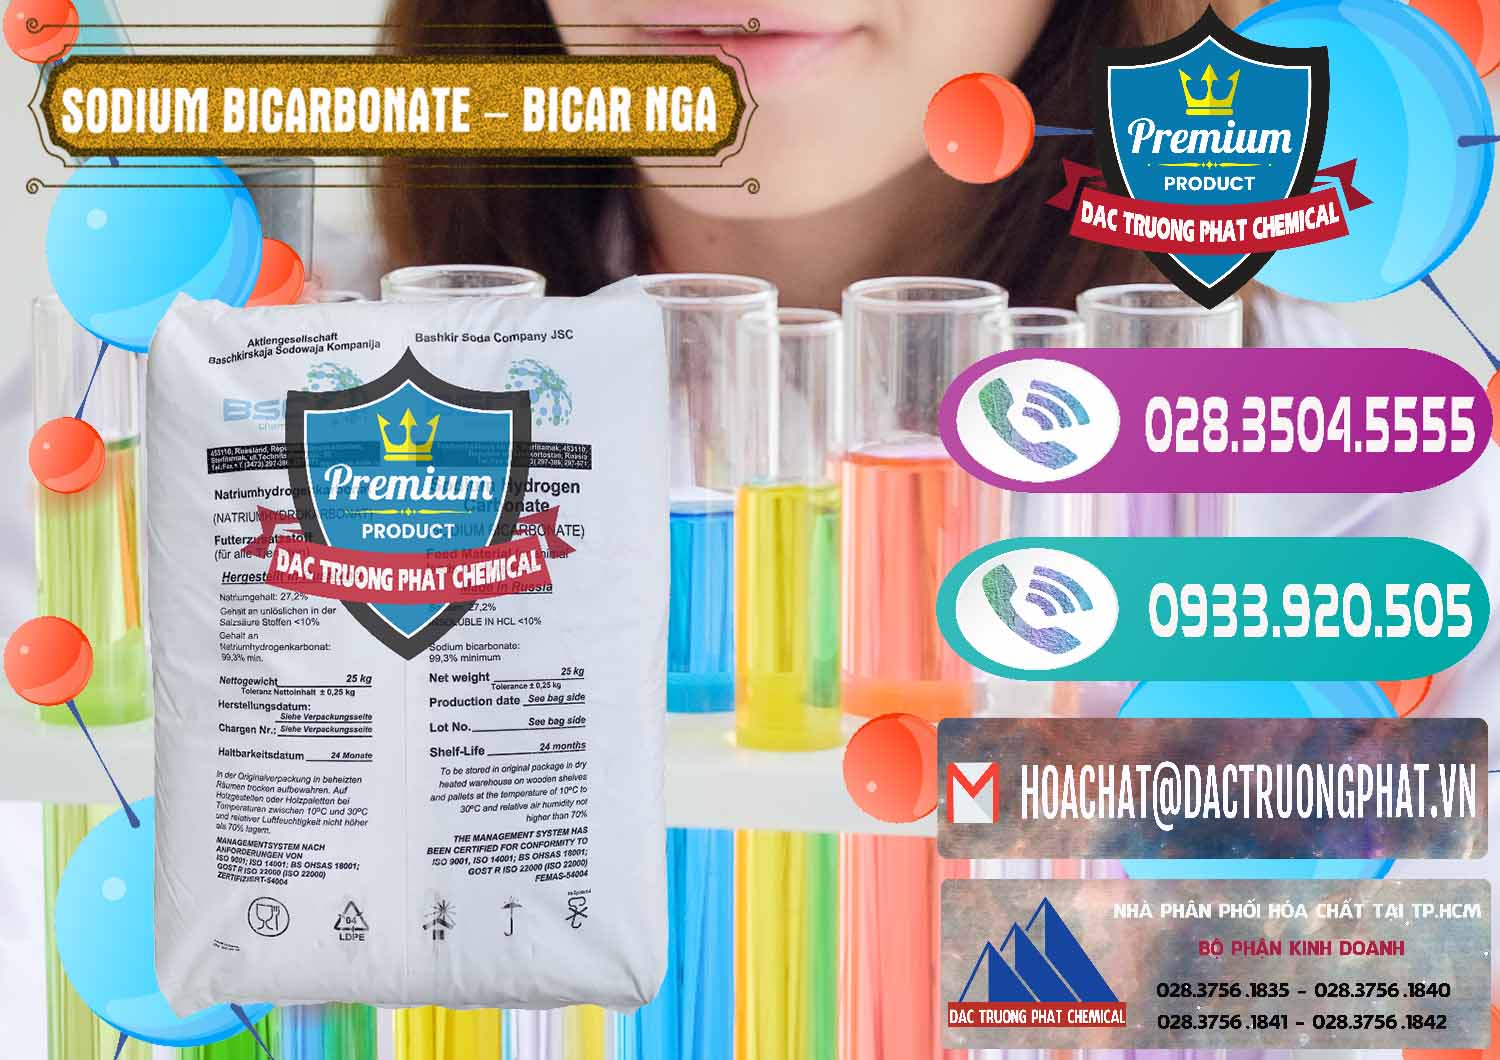 Chuyên kinh doanh _ bán Sodium Bicarbonate – Bicar NaHCO3 Nga Russia - 0425 - Công ty chuyên kinh doanh _ phân phối hóa chất tại TP.HCM - hoachatxulynuoc.com